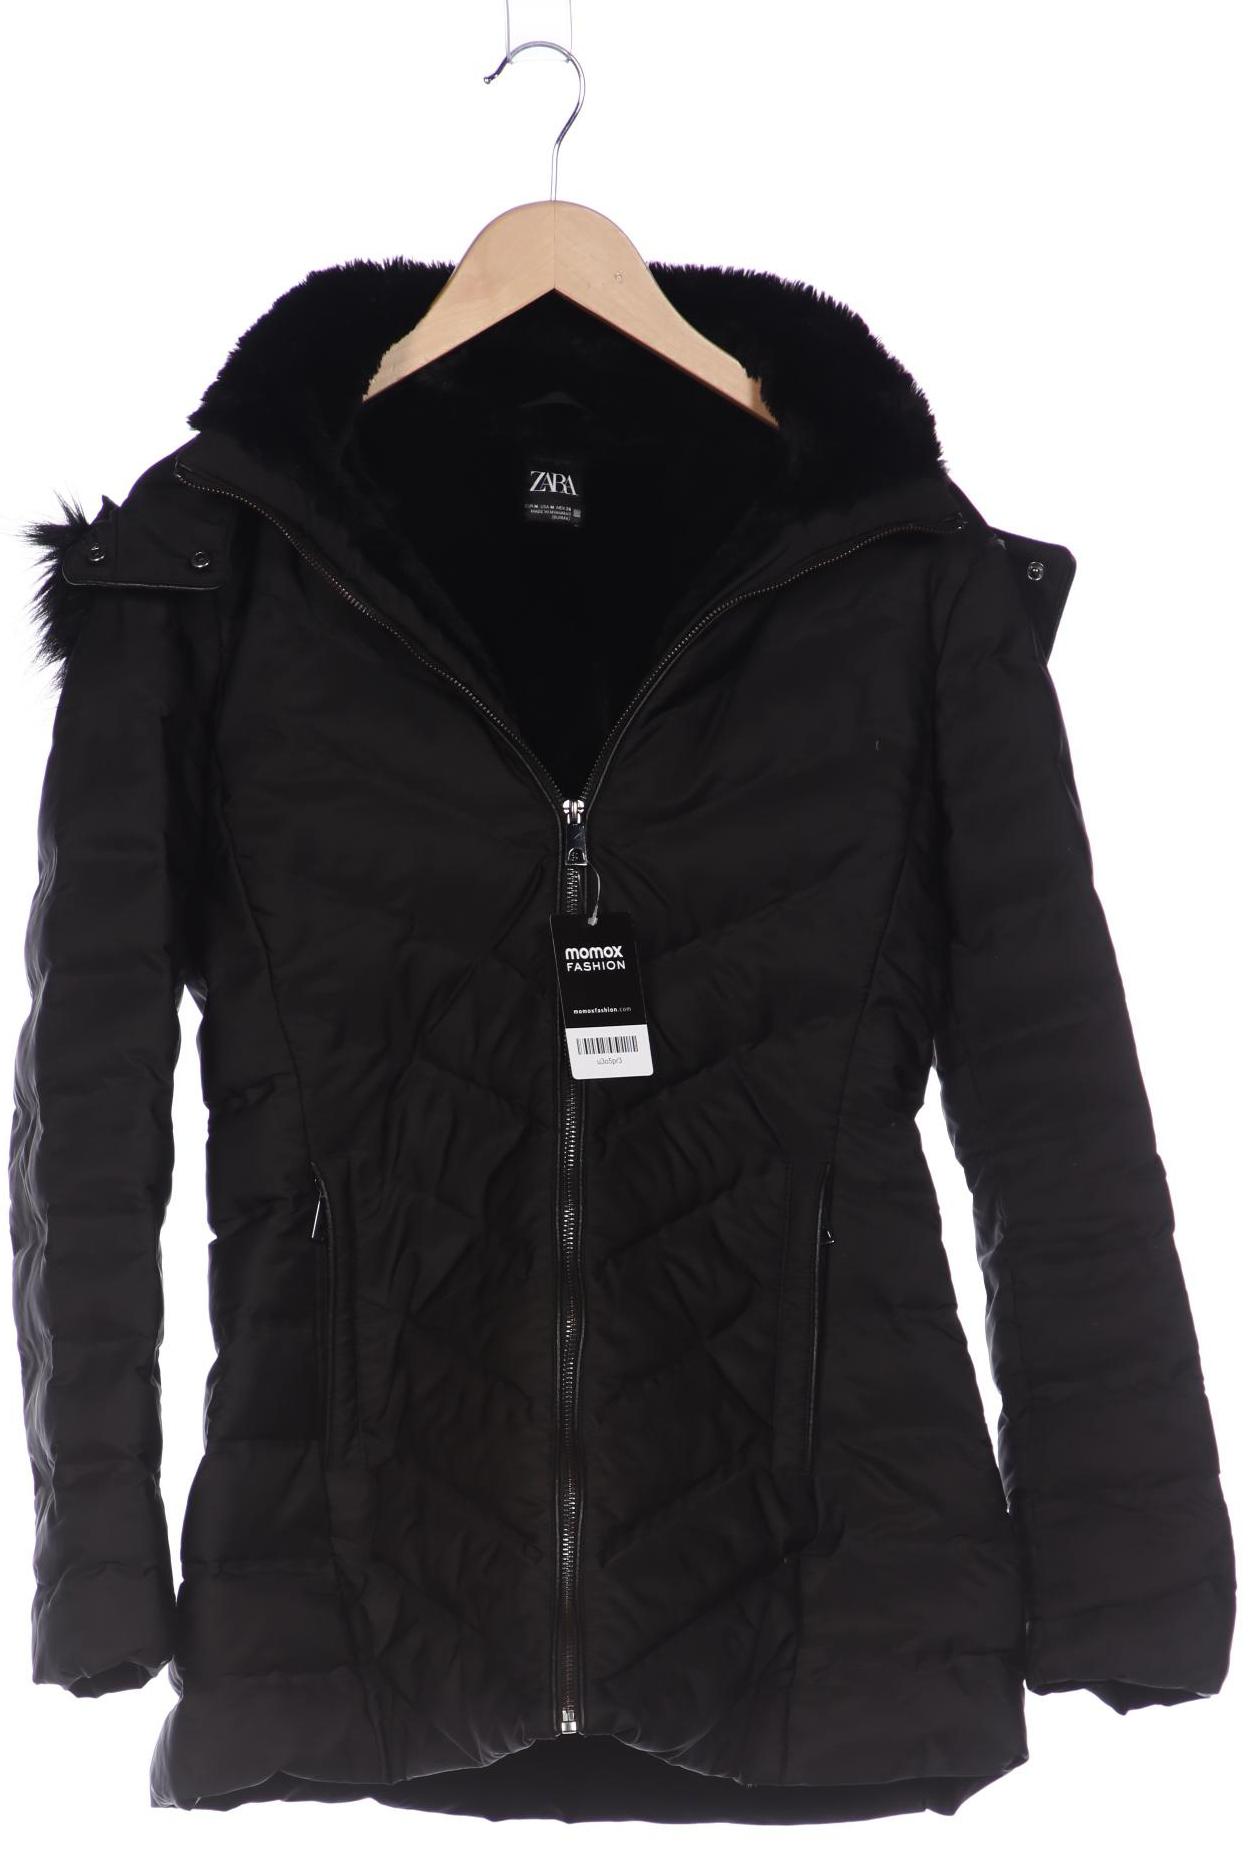 Zara Damen Mantel, schwarz, Gr. 38 von ZARA